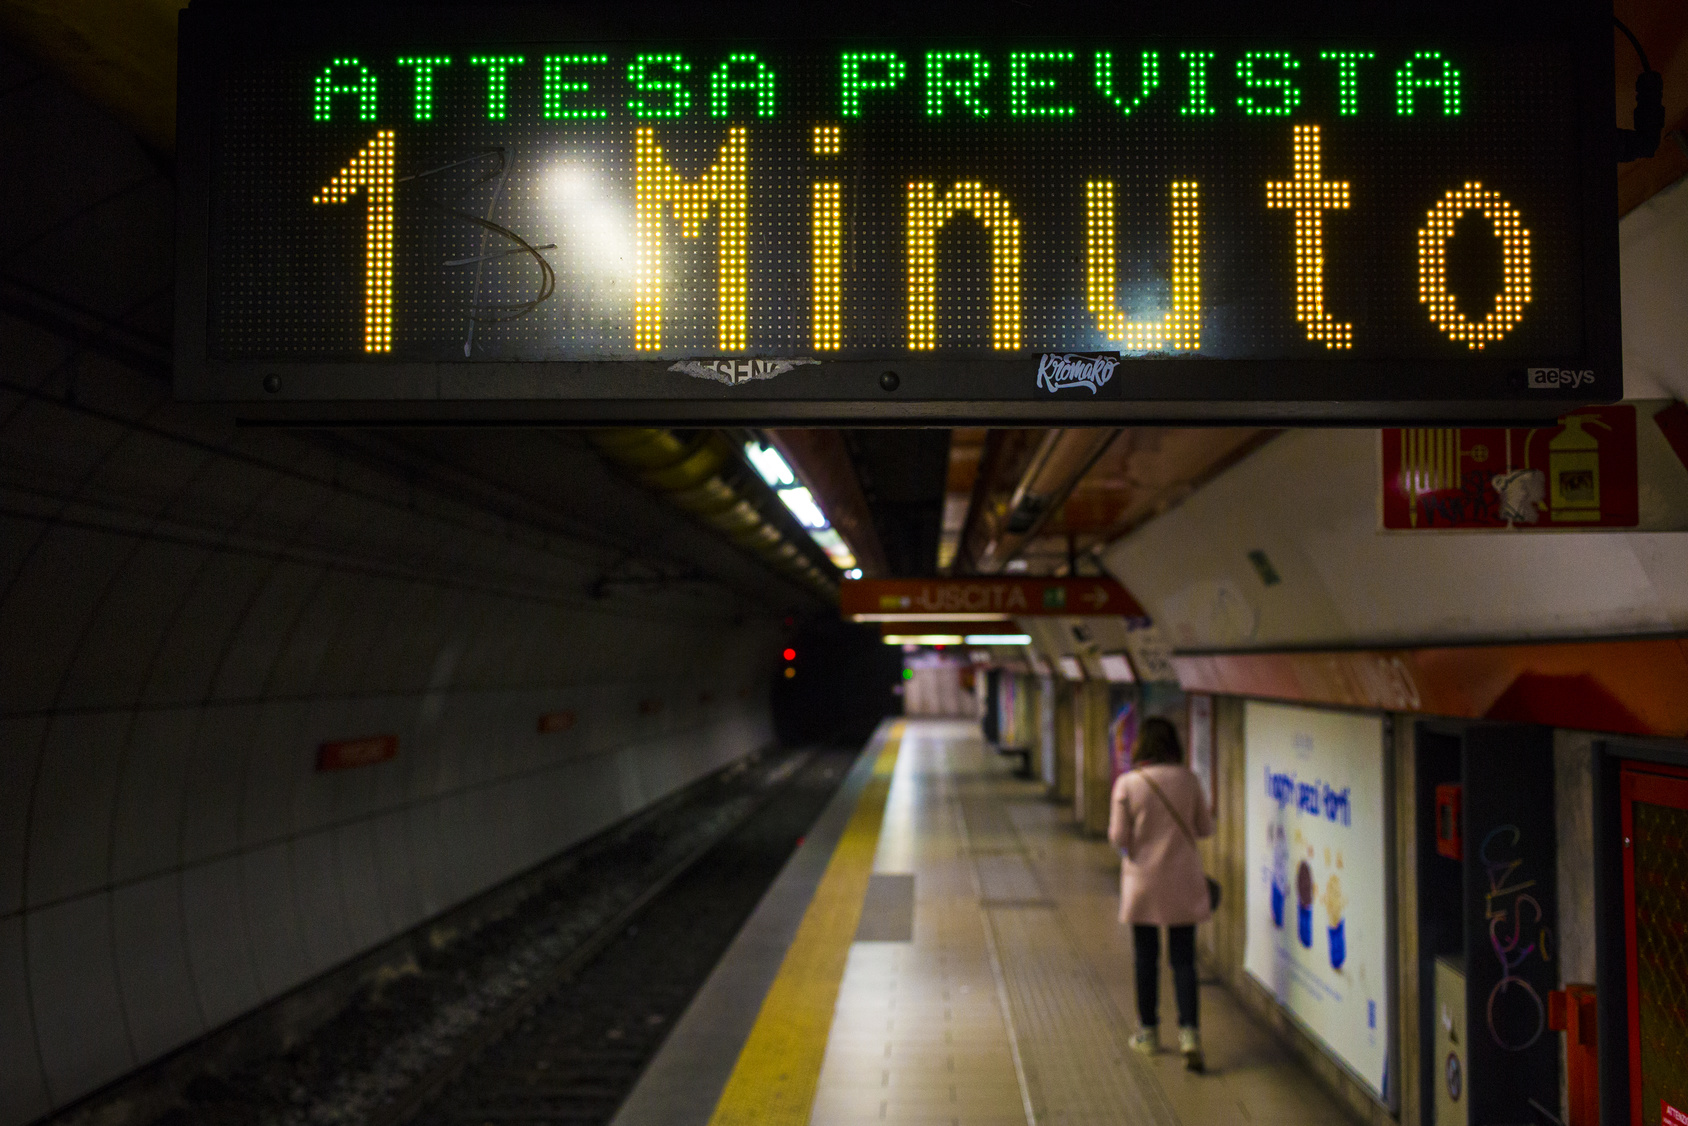 Muoversi a Roma con la metropolitana: i tempi di attesa medi, nei giorni feriali, è di 5 minuti. Il doppio nei giorni festivi